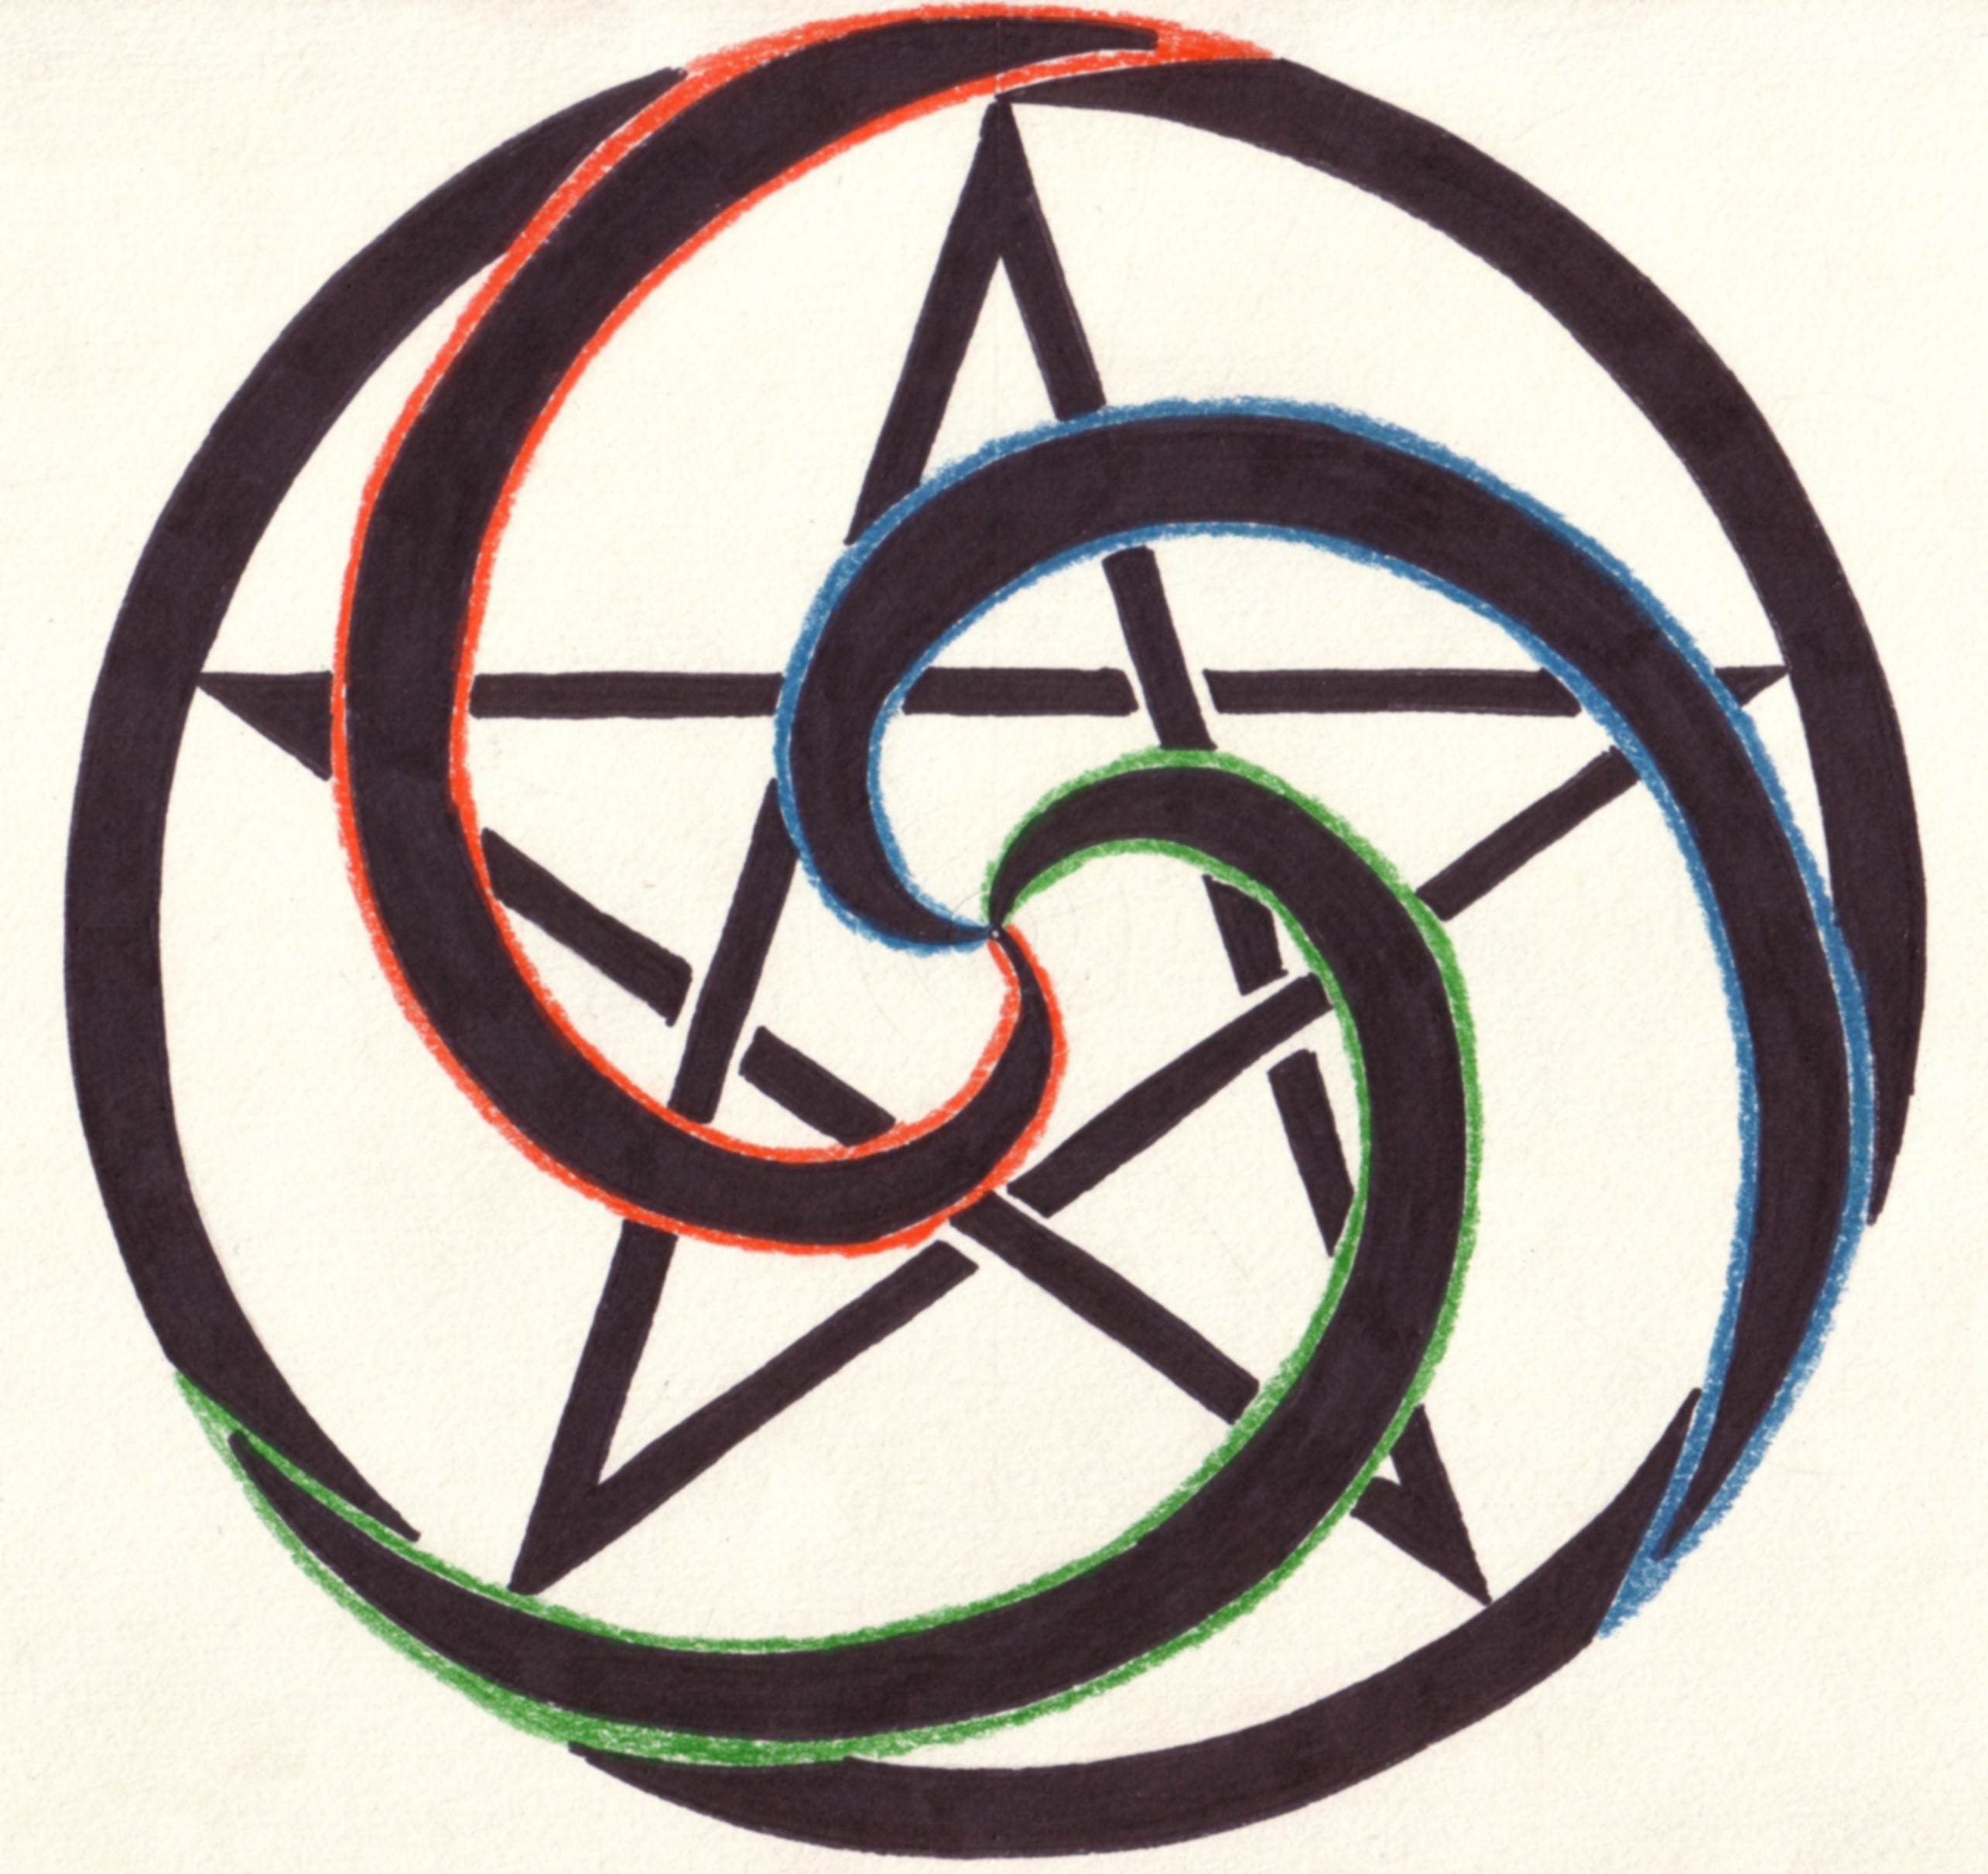 Pentagram by Mehet-ure on DeviantArt